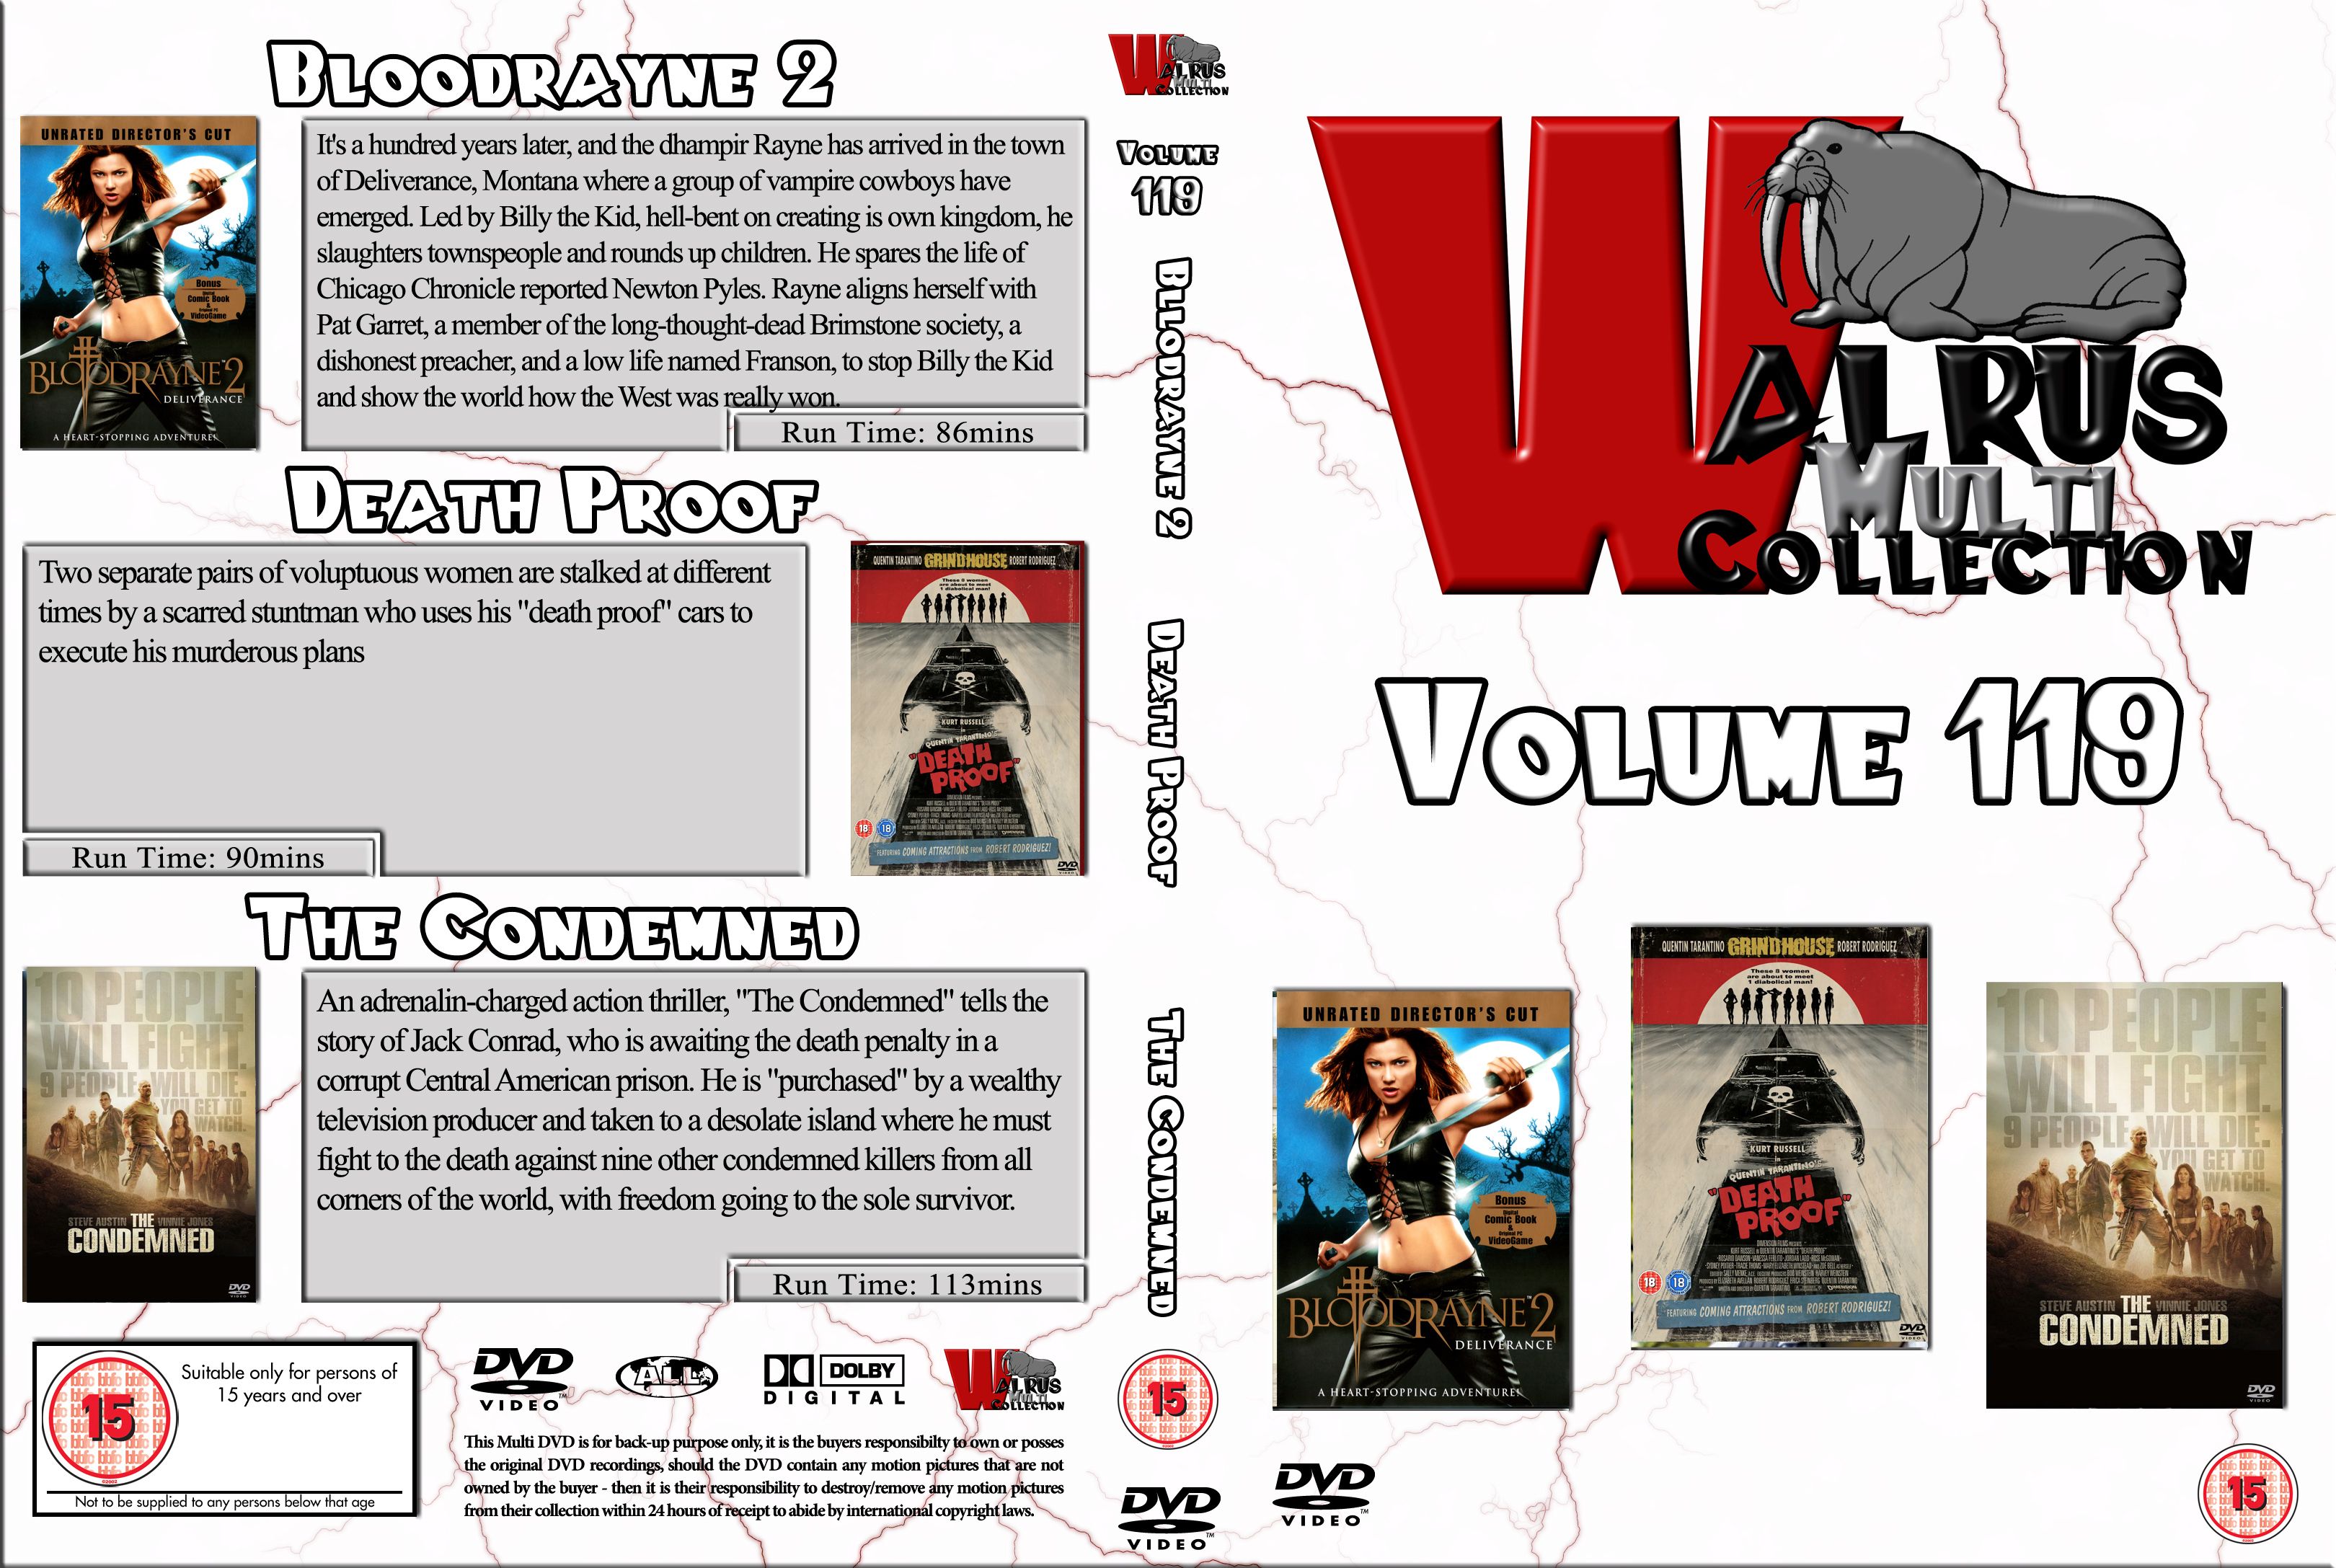 Walrus Vol. 119 DVD US